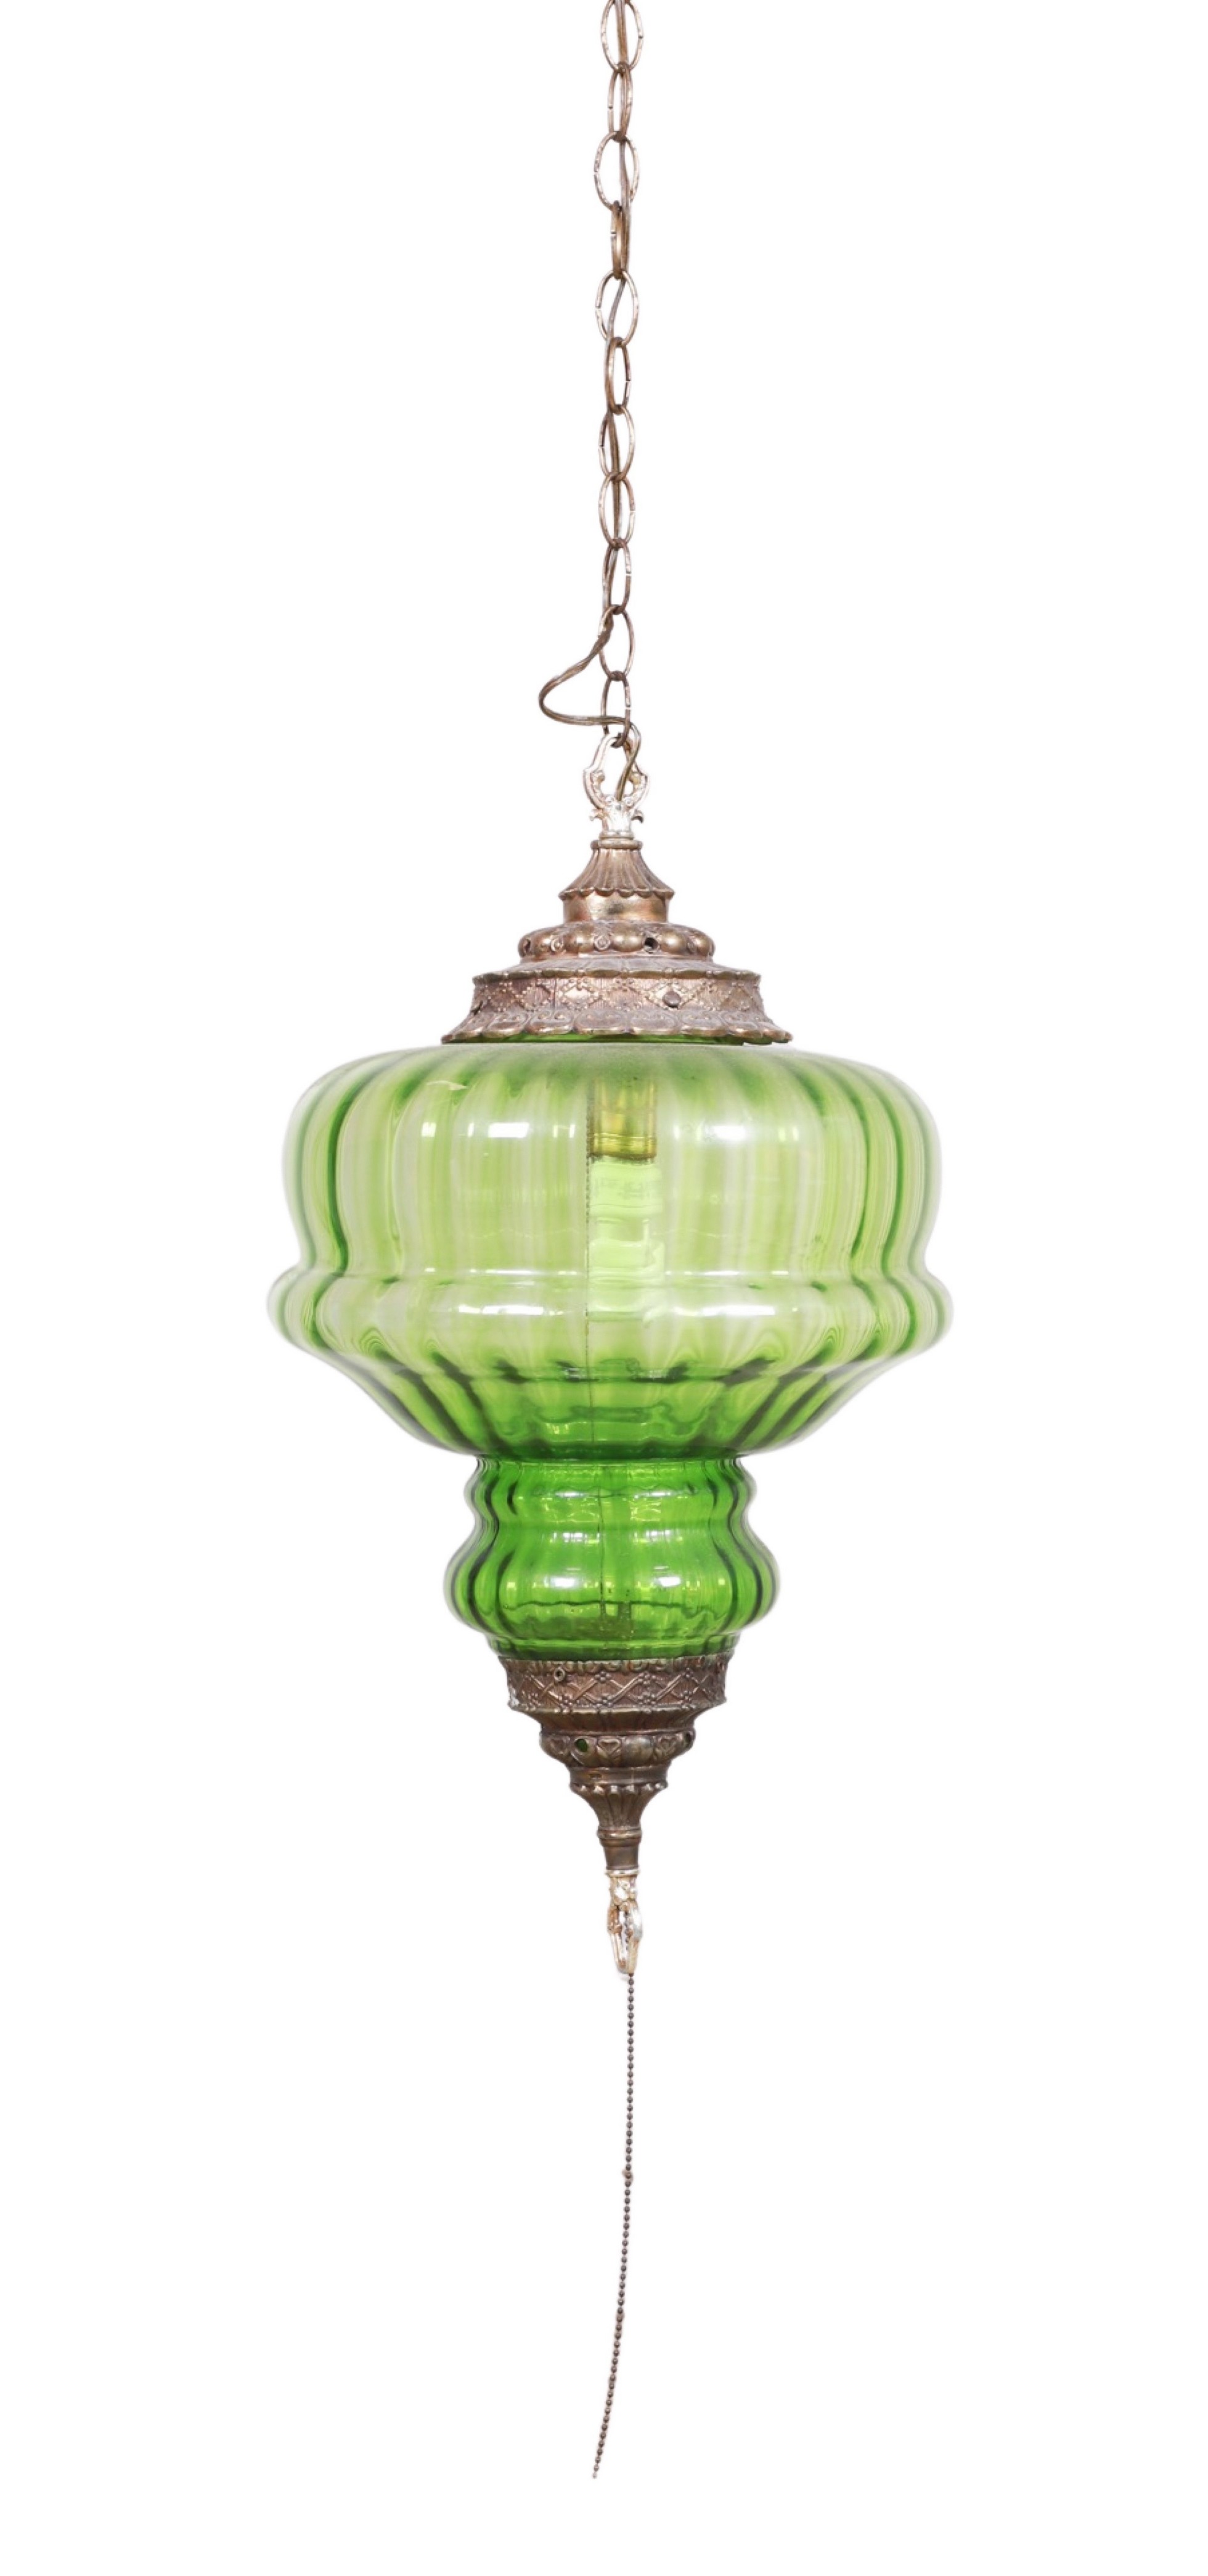 Green glass pendant swag lamp, metal